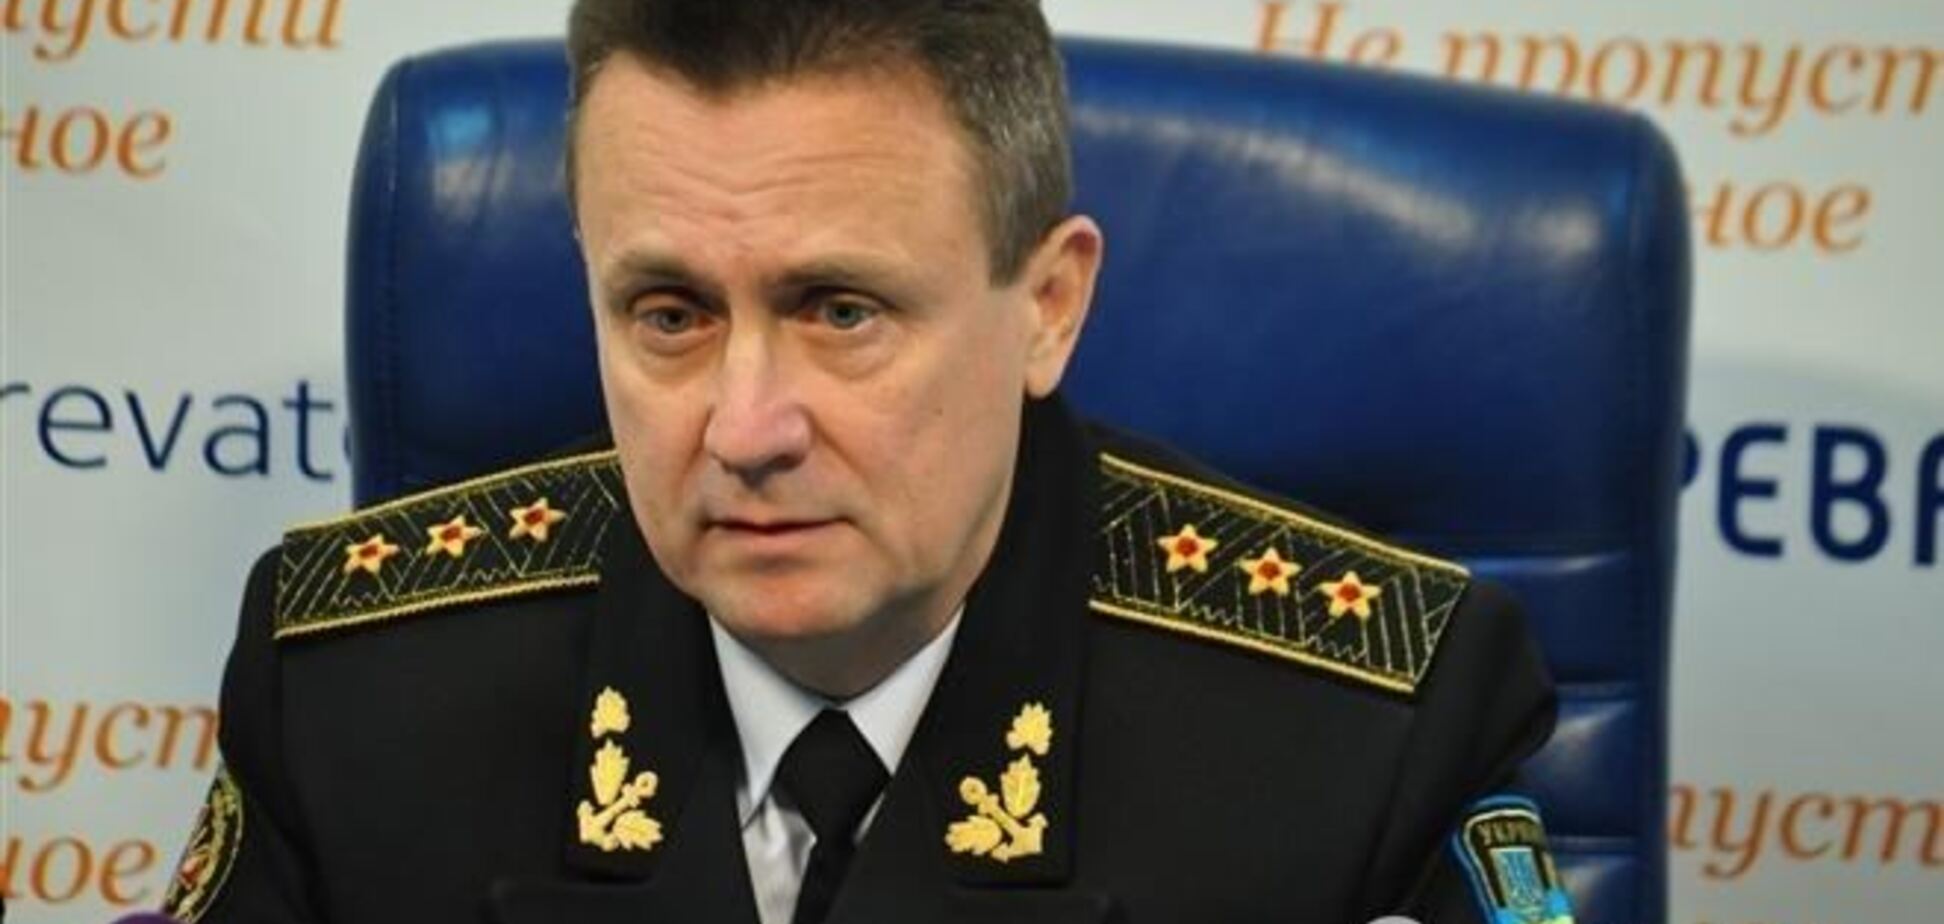 Віце-адмірал: українські війська повинні залишитися в Криму - це наша земля